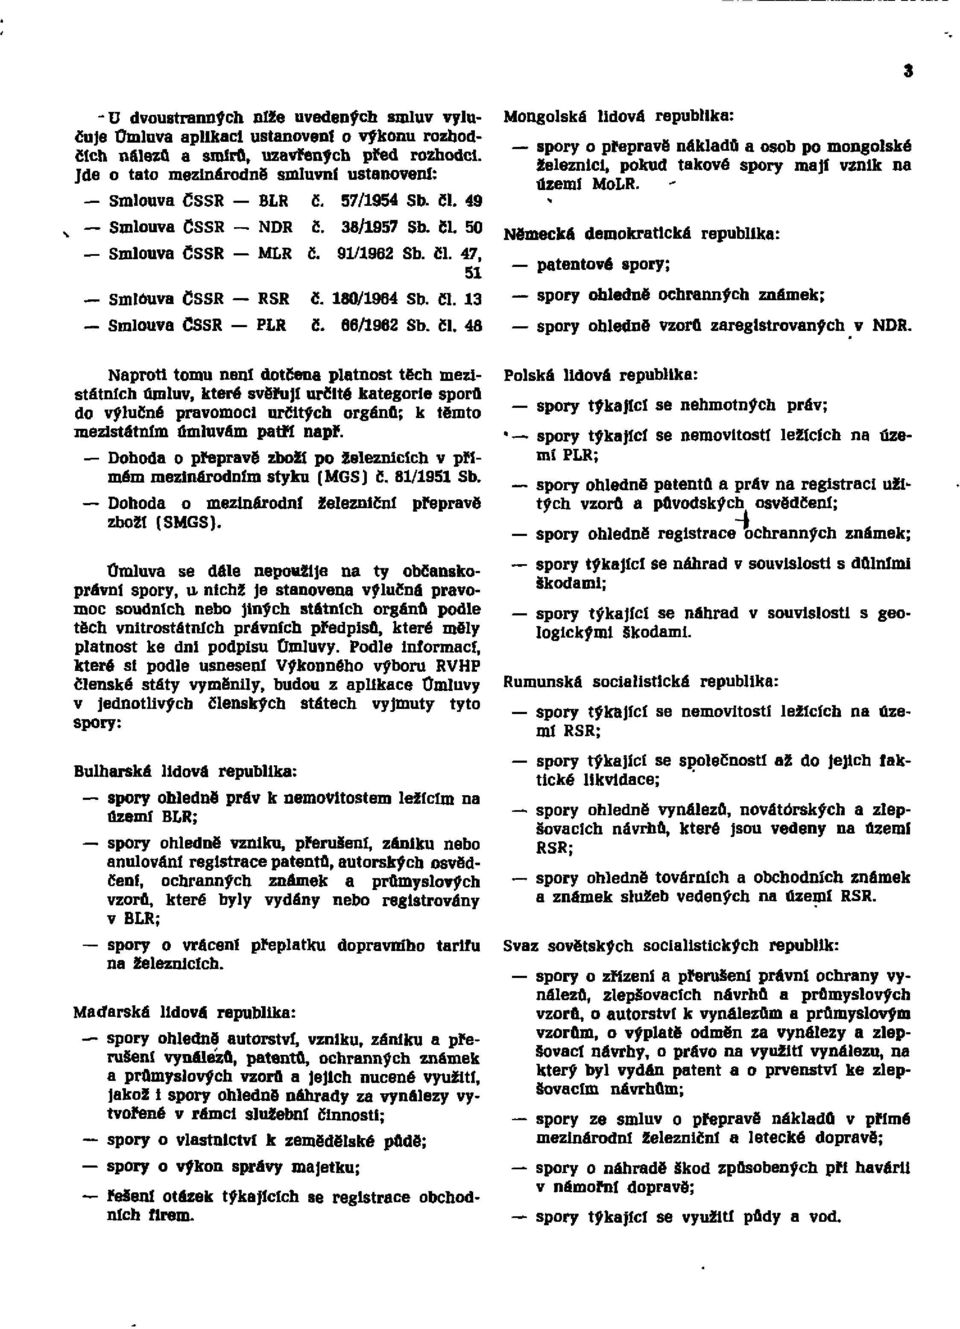 66/1962 Sb. čl. 48 Mongolská lidová republika: spory o přepravě nákladů a osob po mongolské železnici, pokud takové spory mají vznik na území MoLR. spory ohledně vzorů zaregistrovaných v NDR.